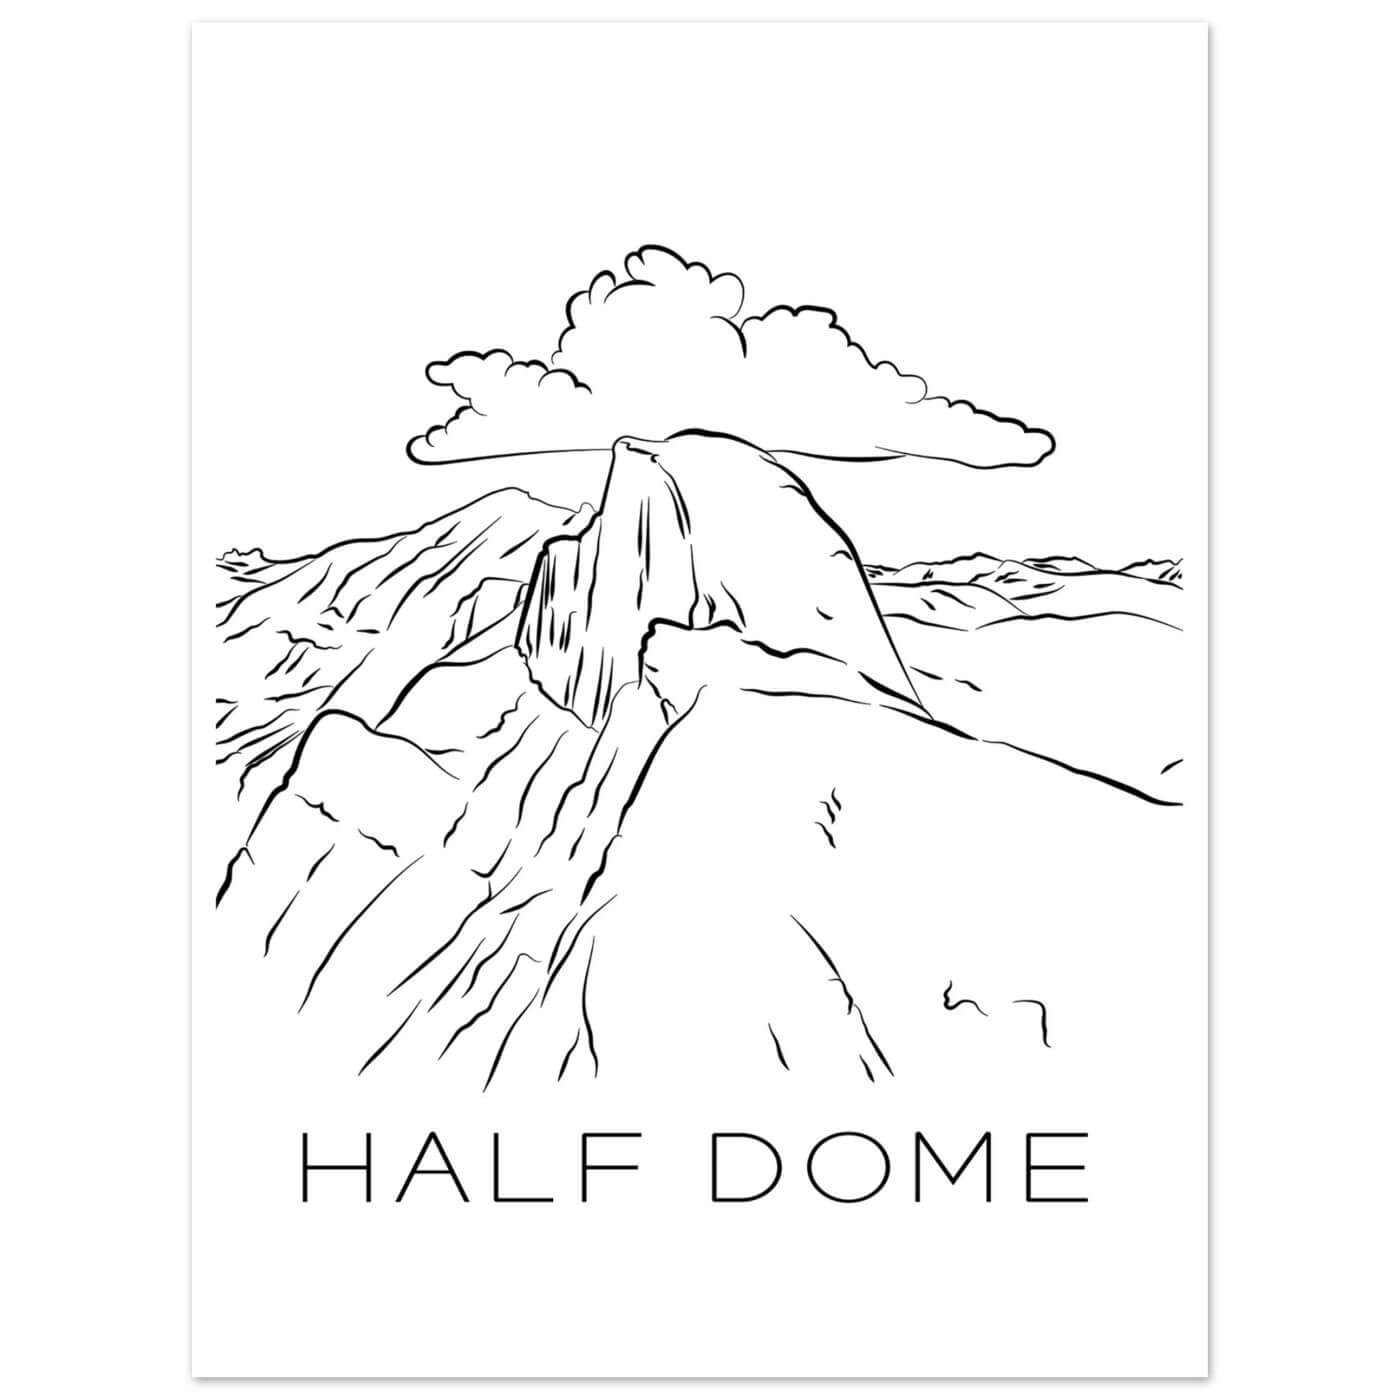 Half Dome - Black & White